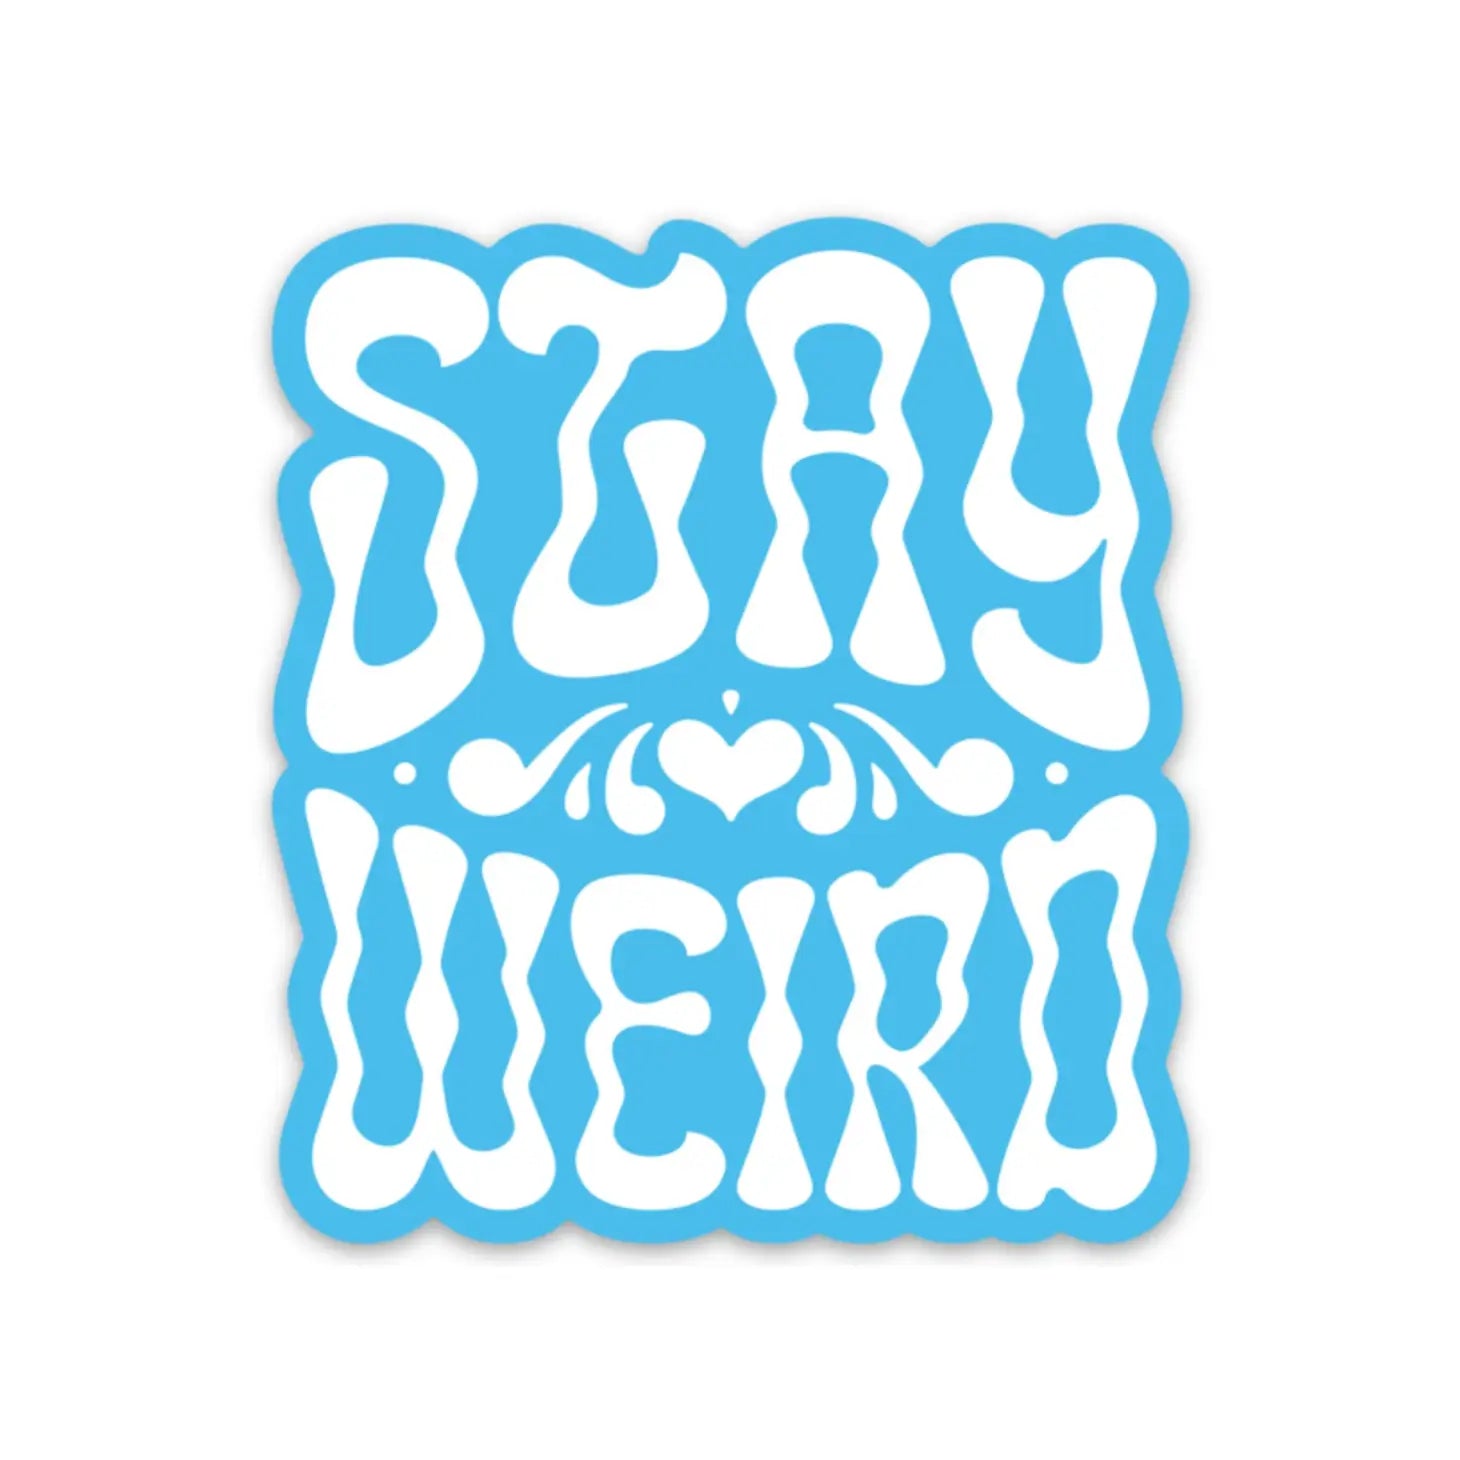 Stay Weird Vinyl Sticker in Blue